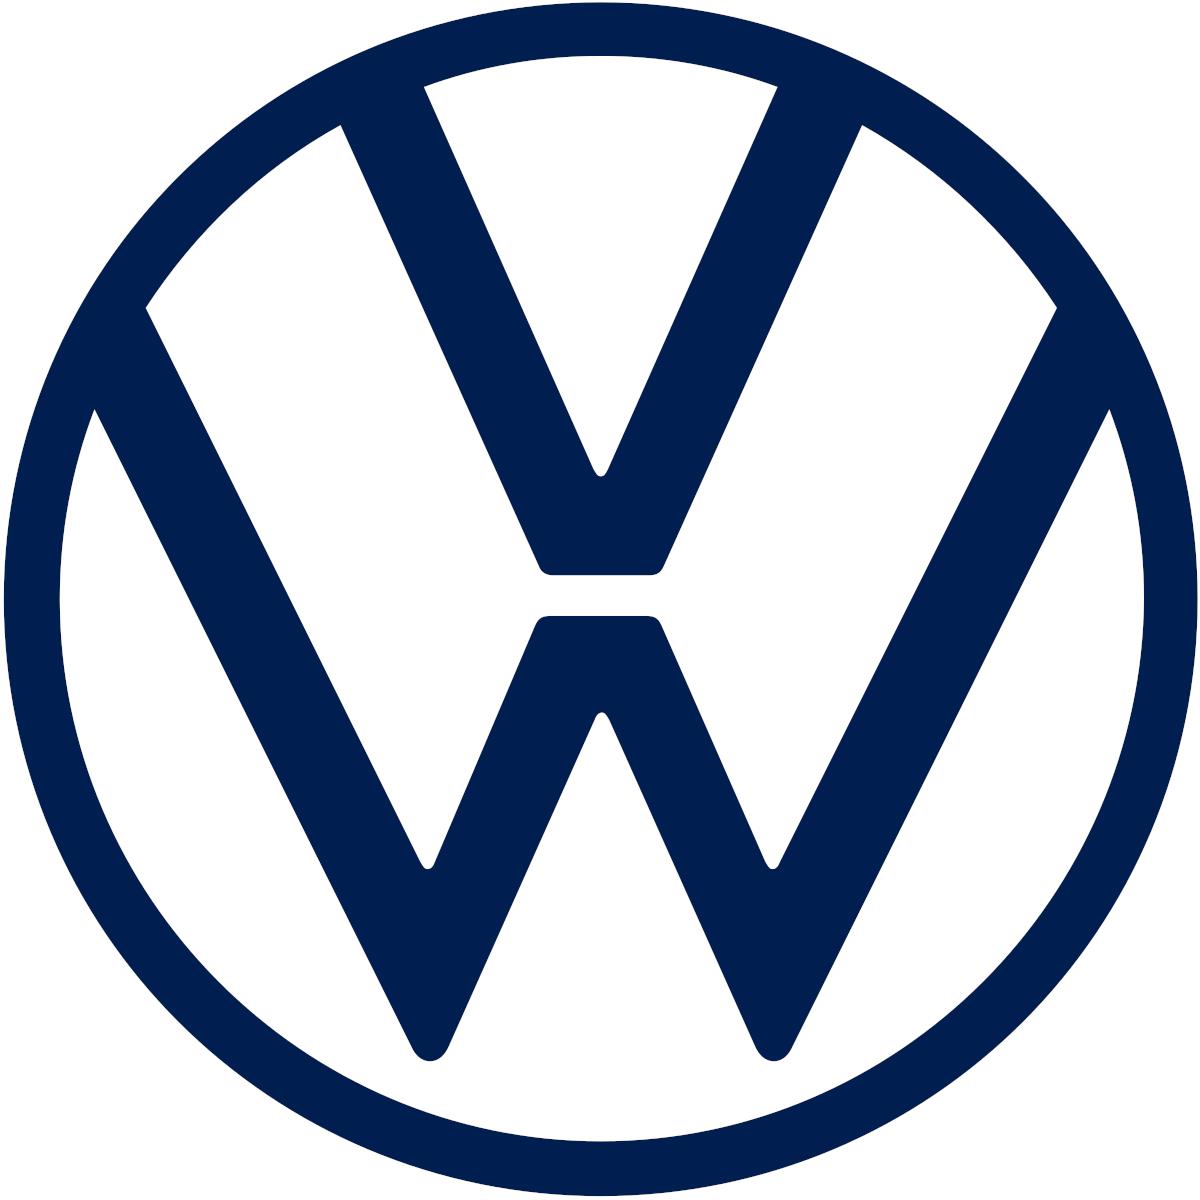 volkswagen logo  Vw art, Volkswagen logo, Volkswagen